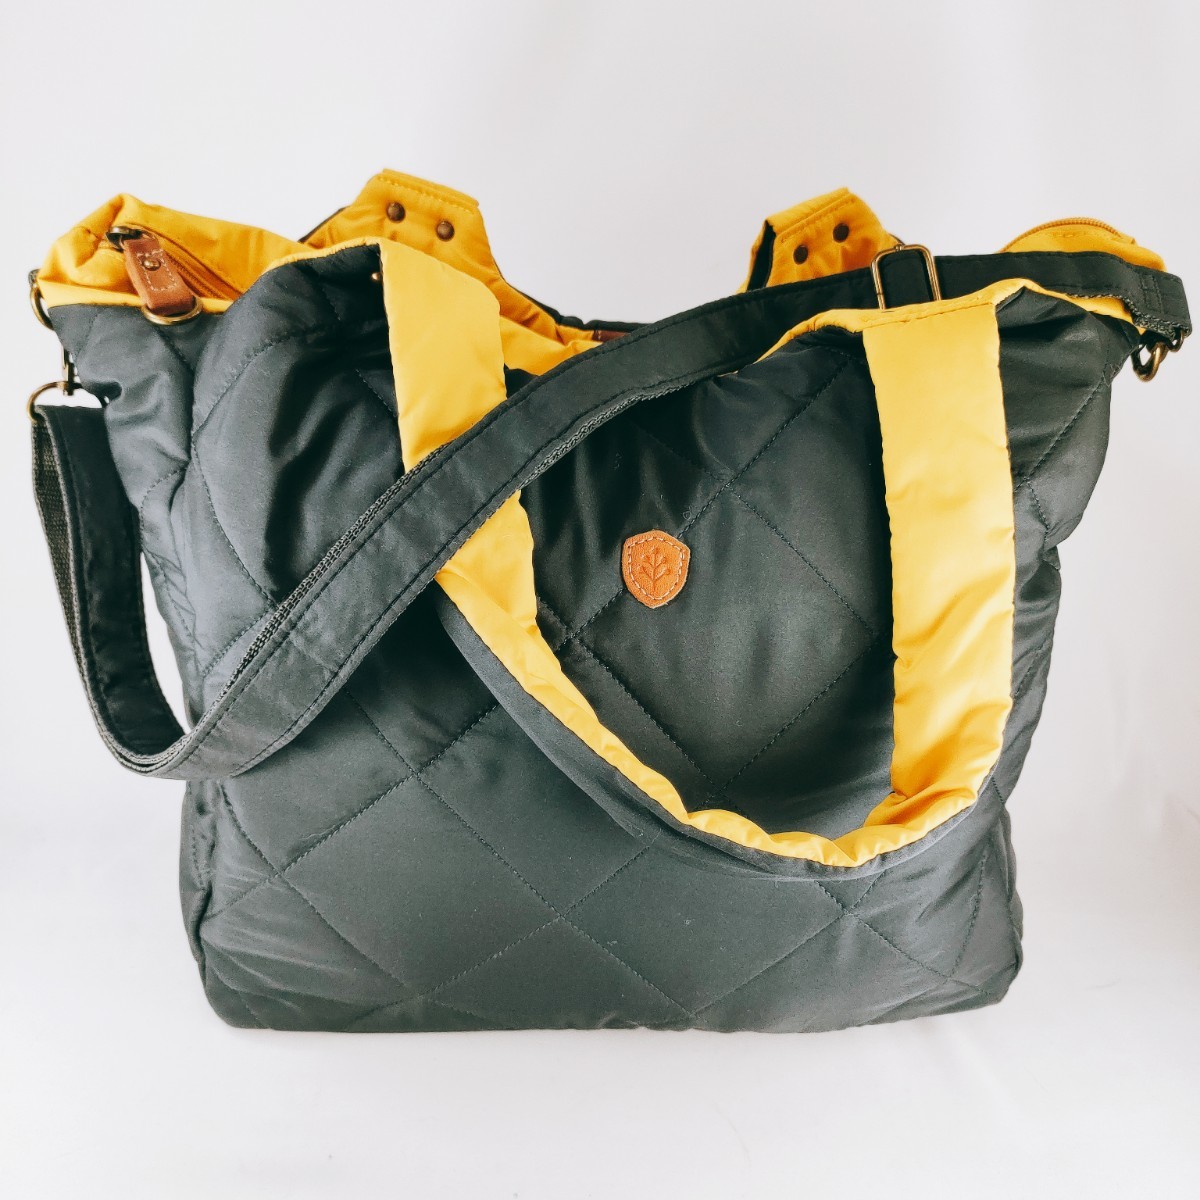 【大容量】 chiemi sacs チエミサックス ハンドバッグ ショルダー ナイロン グレー系 肩掛け 手提げ トート 鞄 軽量 エコバッグ かばんの画像1